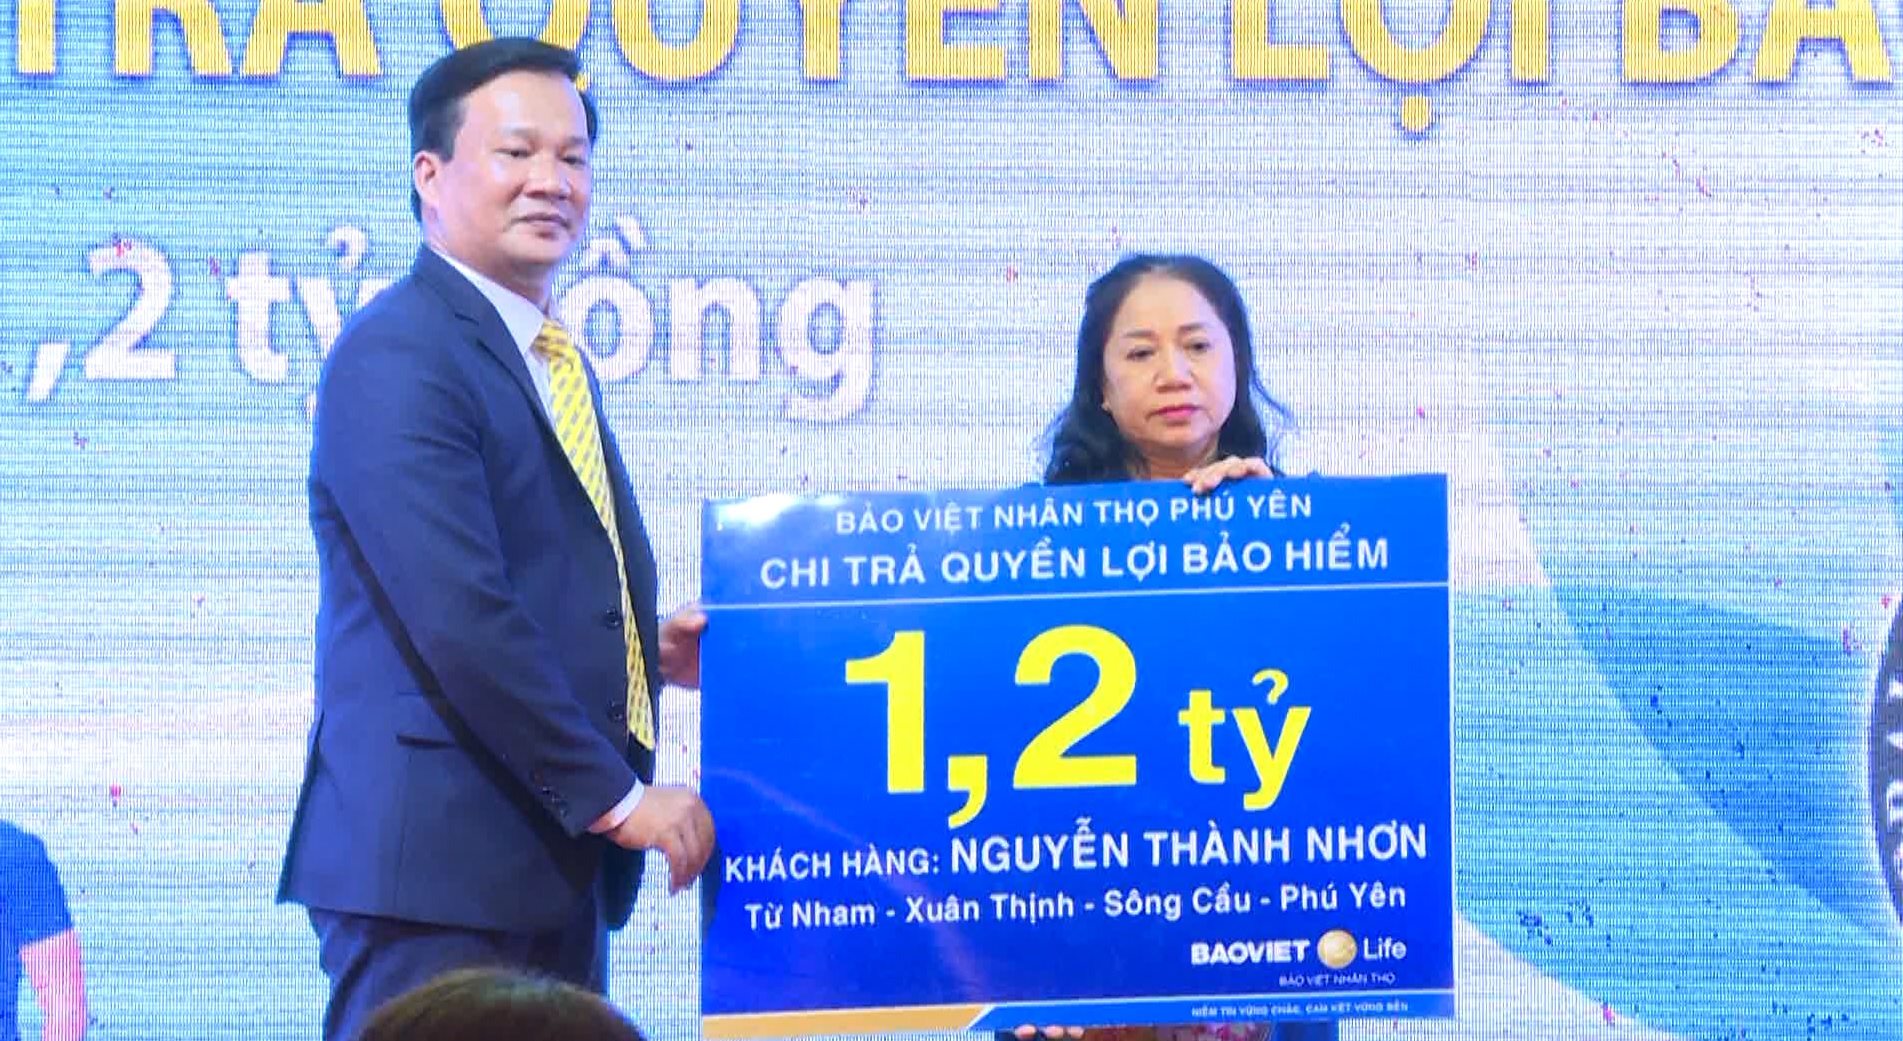 Bảo Việt Nhân Thọ Phú Yên chi trả quyền lợi bảo hiểm 1,2 tỷ đồng tại Thị xã Sông Cầu